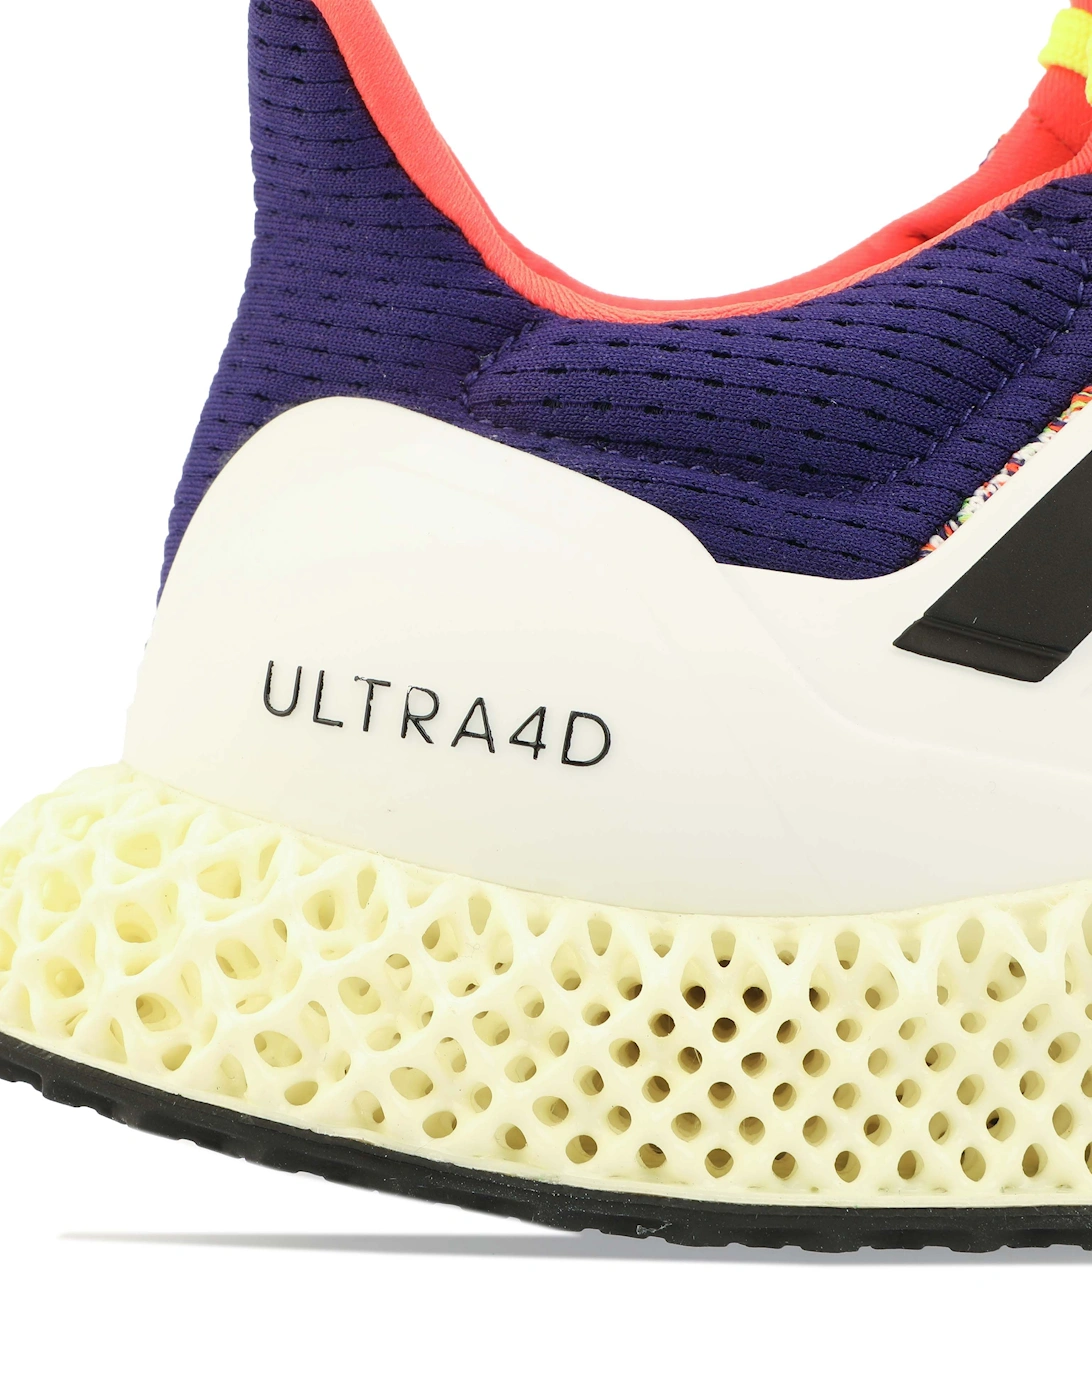 Men's Mens Ultra 4D Running Shoes - White